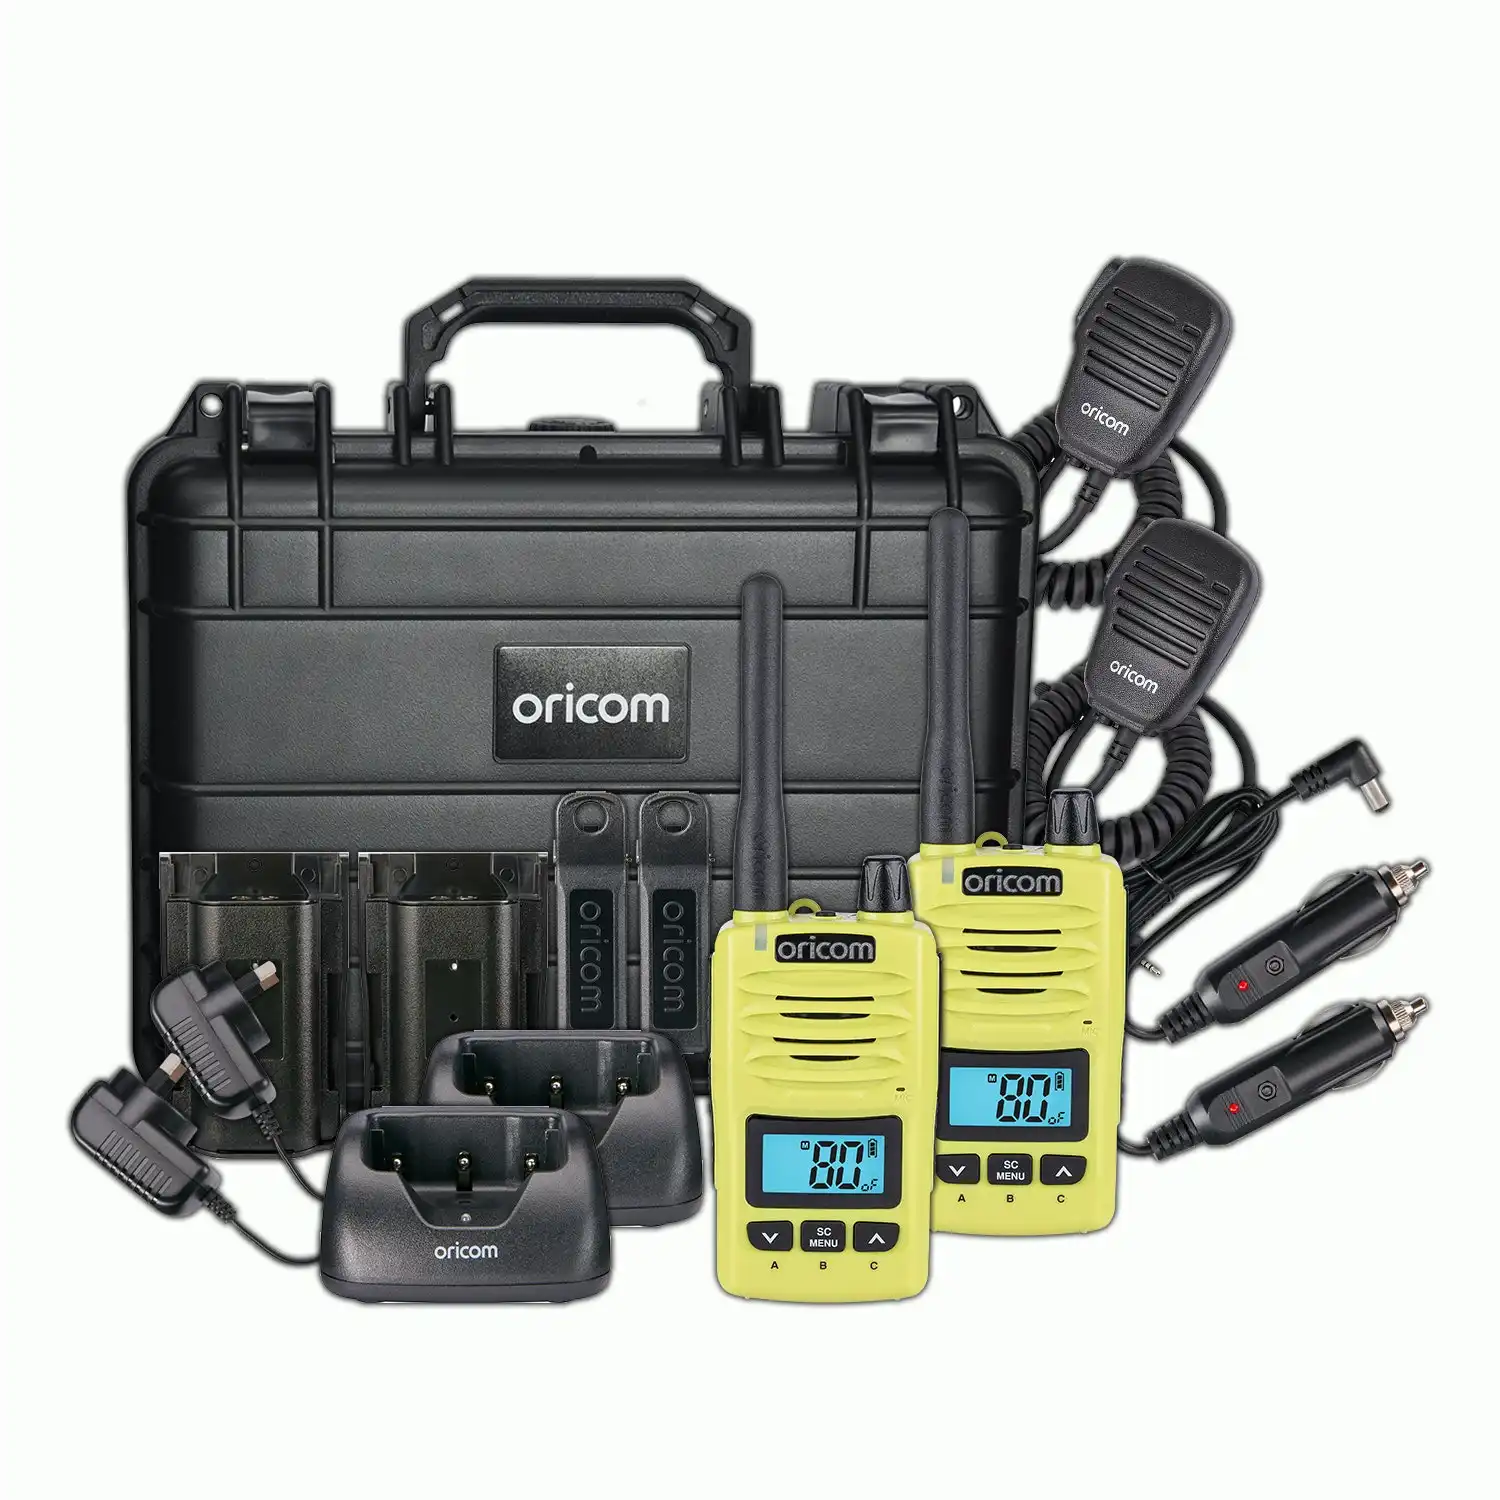 Oricom DTXTP600 5 Watt IP67 Waterproof Handheld UHF CB Radio Trade Pack - Lime